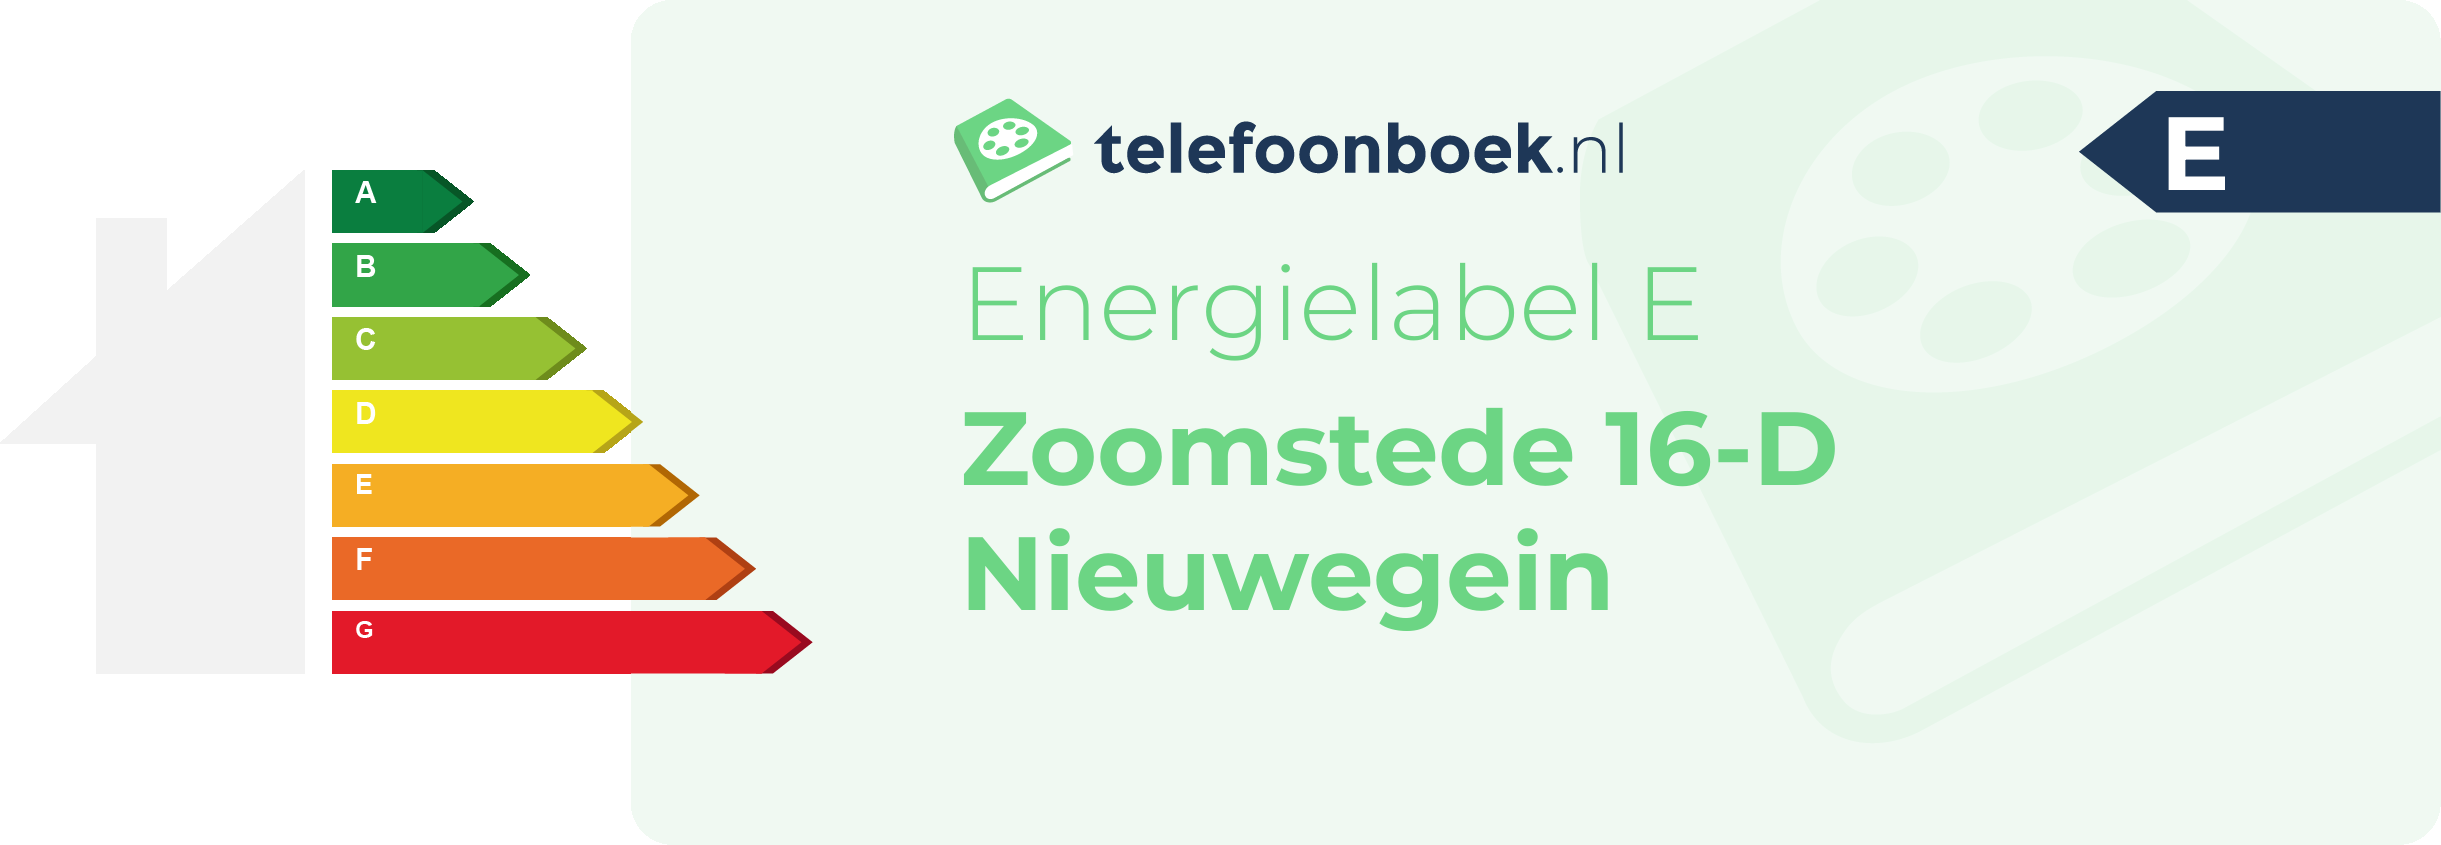 Energielabel Zoomstede 16-D Nieuwegein